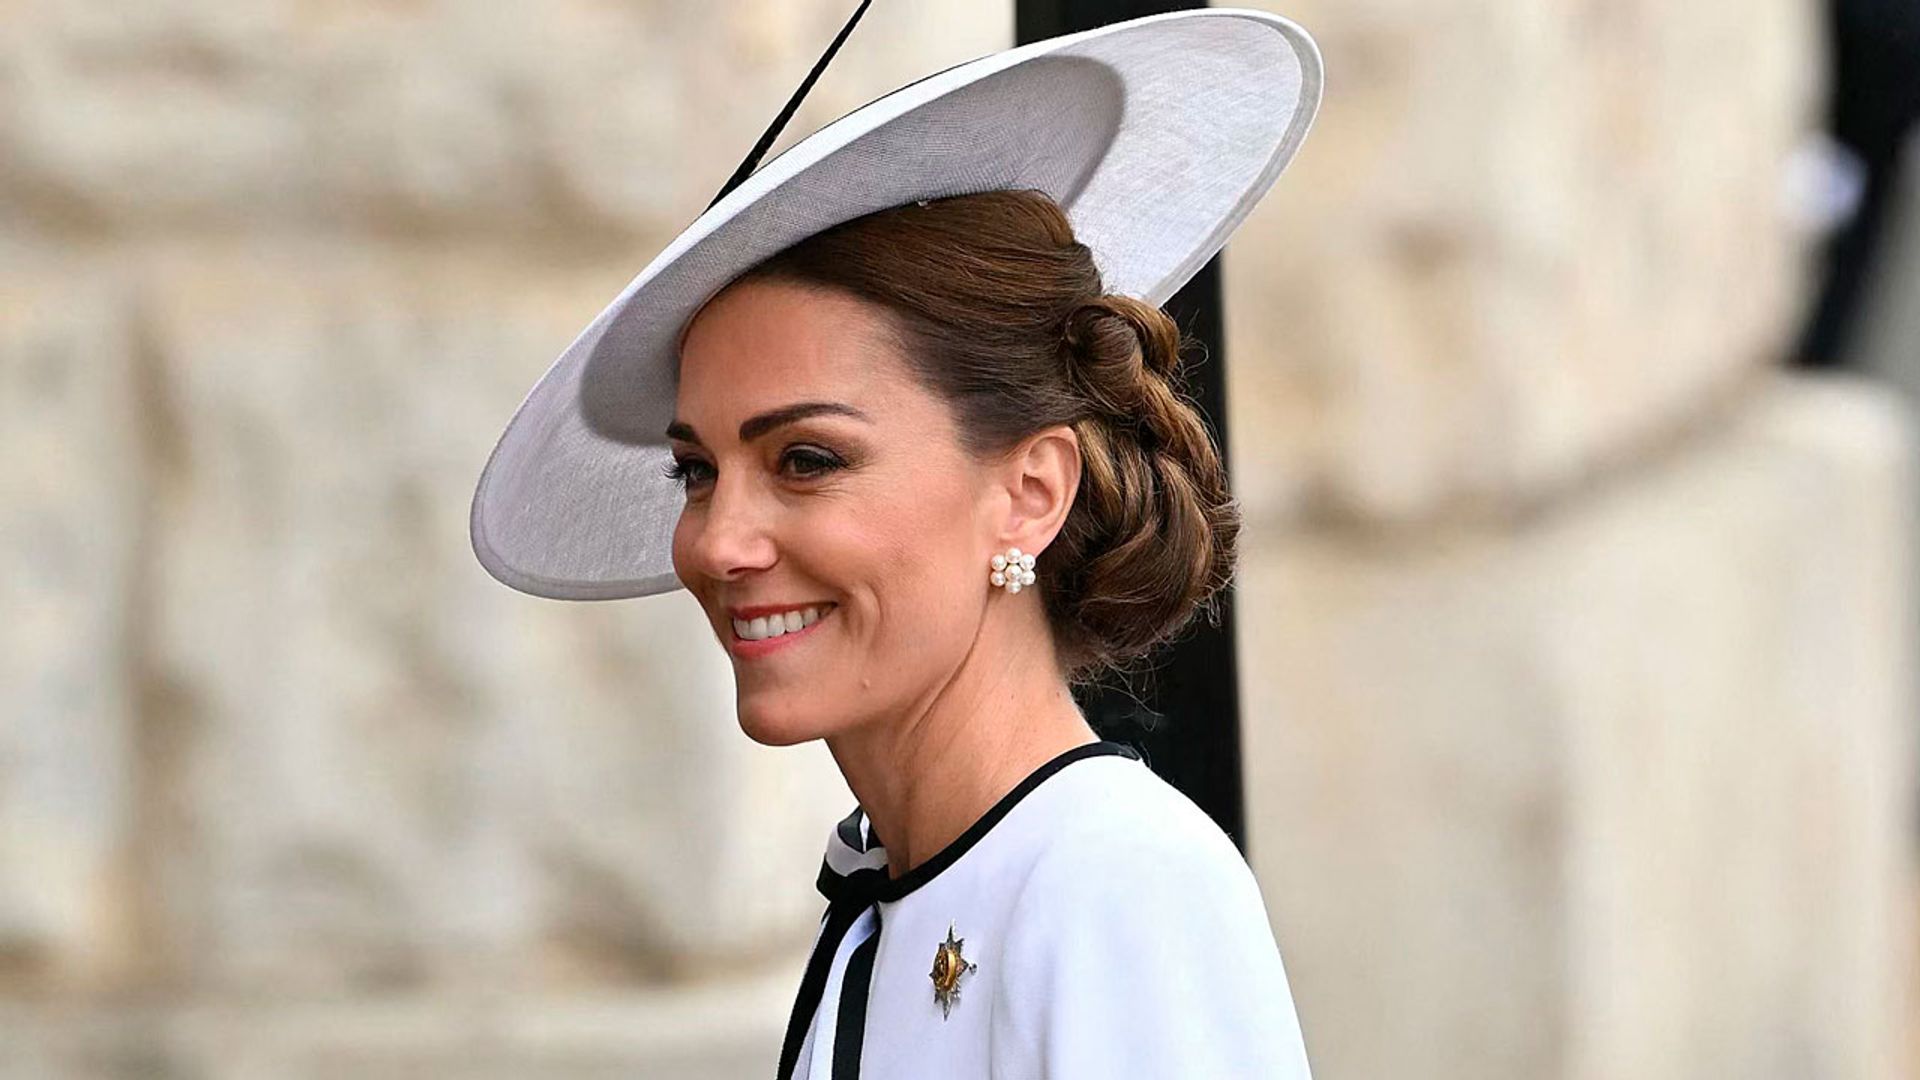 El esperanzador mensaje detrás del look bicolor que Kate Middleton ha lucido en el ‘Trooping the Colour’